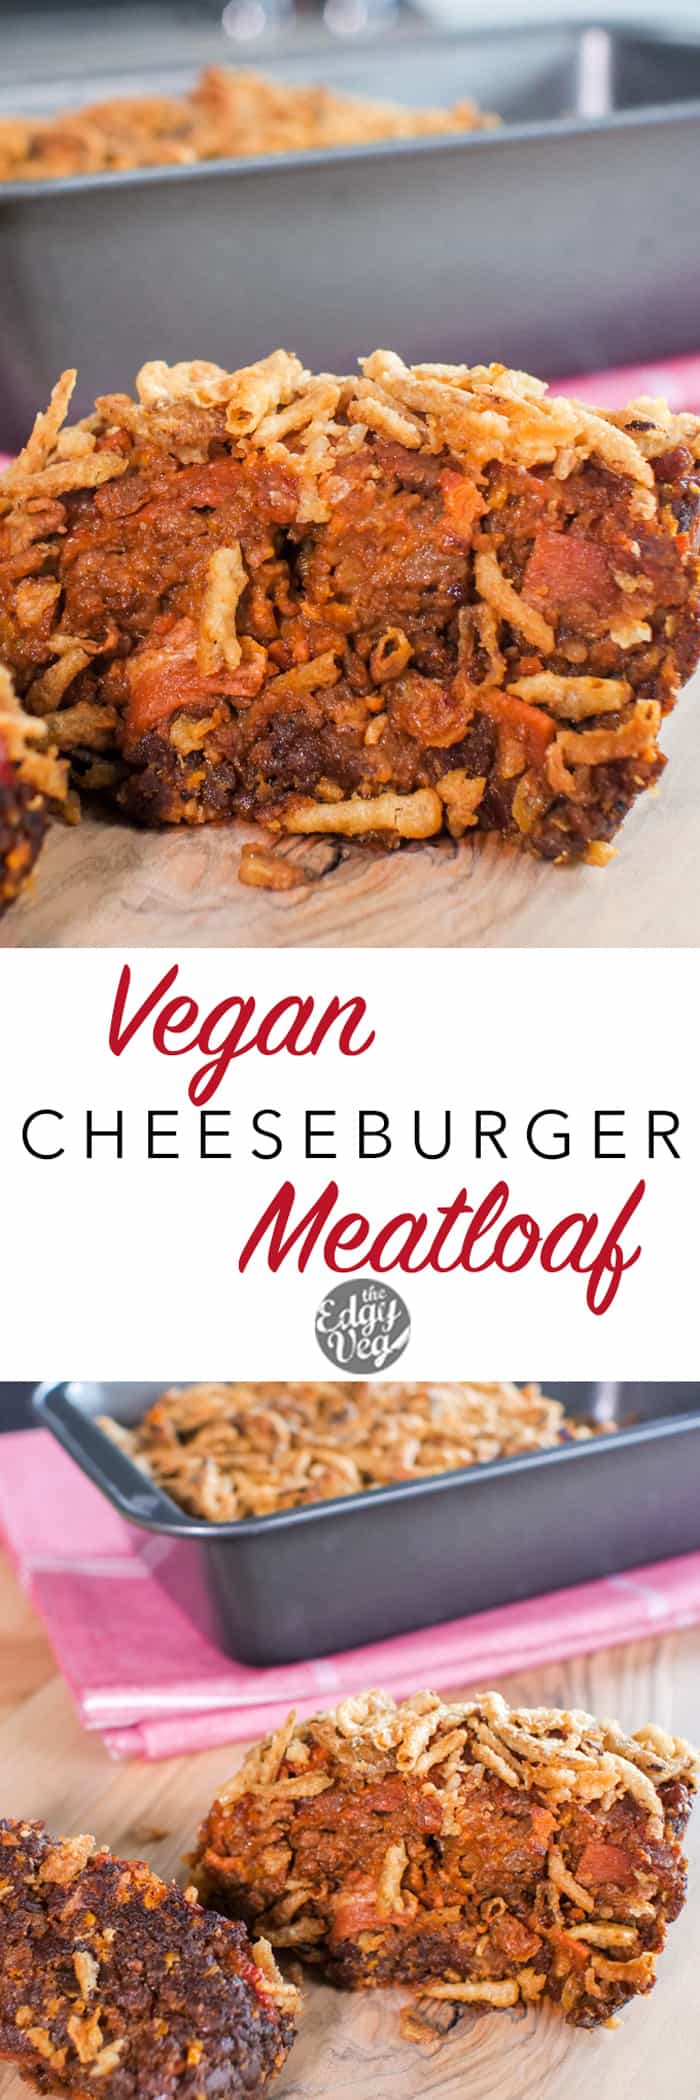 Vegan Cheeseburger Meatloaf - Inspired by Paula Deen